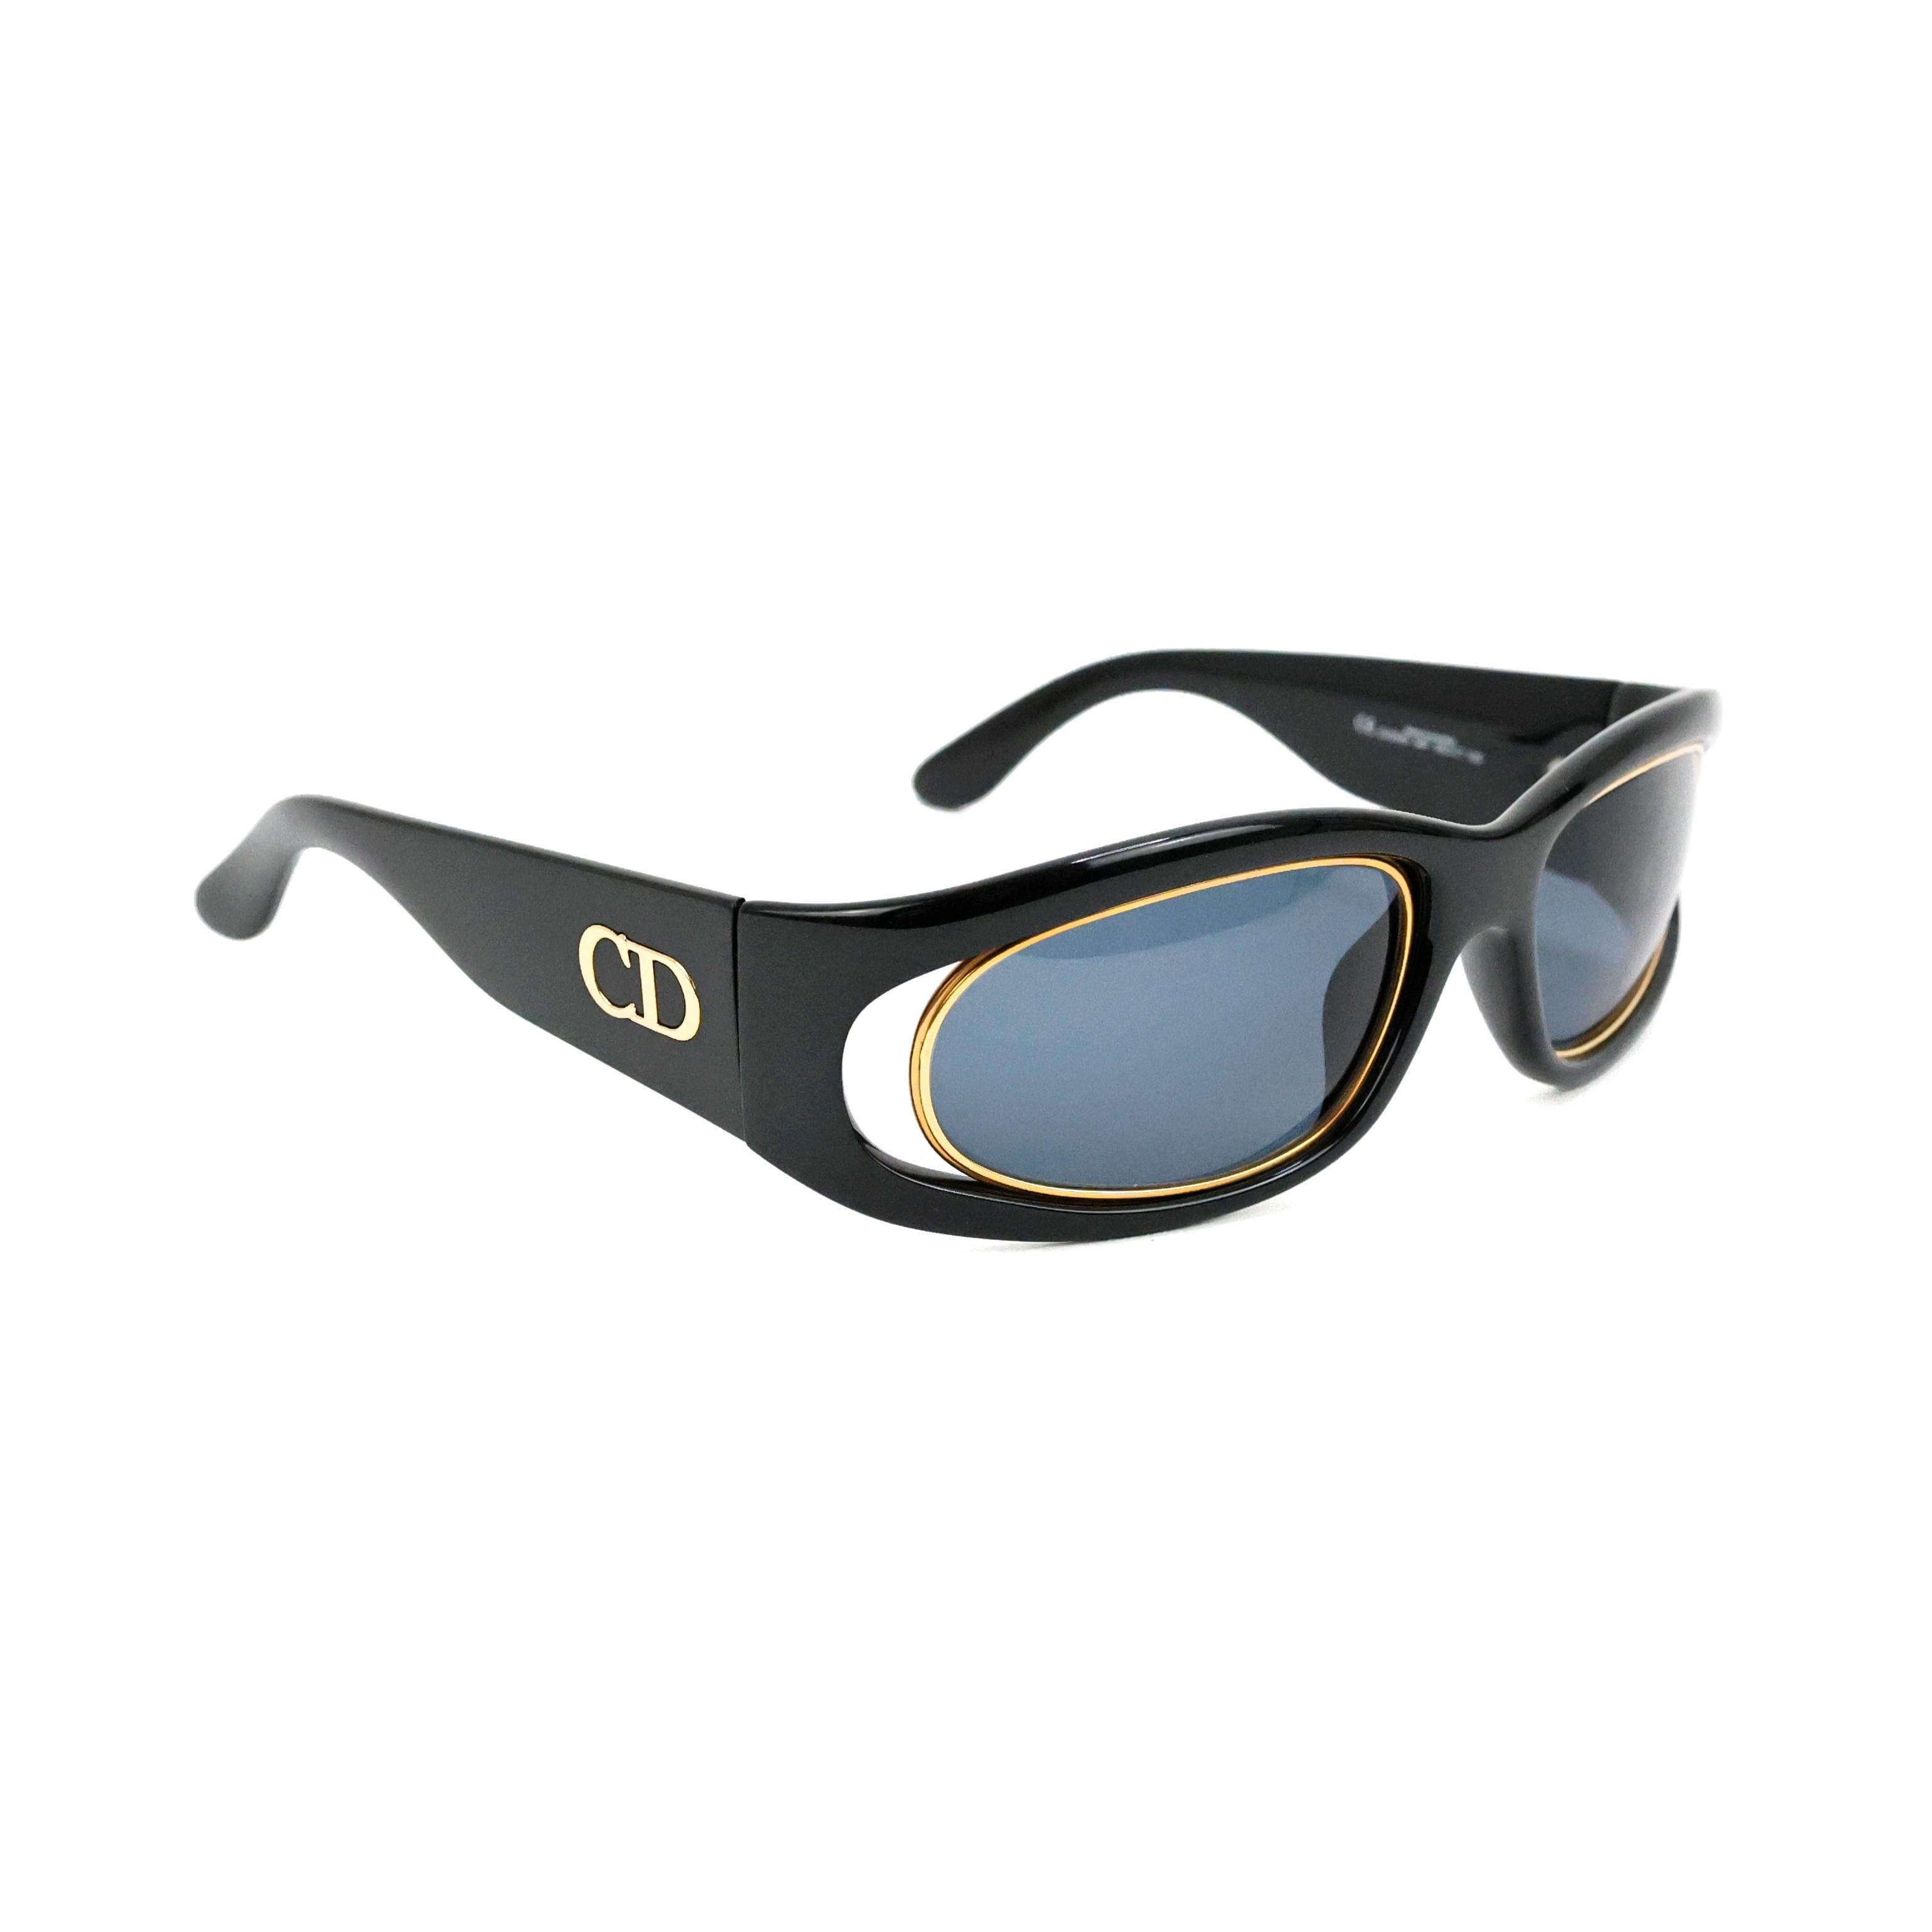 Schwarz-goldene Sonnenbrille von Dior.

Bedingung:
Wirklich gut. Zu beachten: leichte Kratzer auf dem Glas, die beim Tragen nicht auffallen.